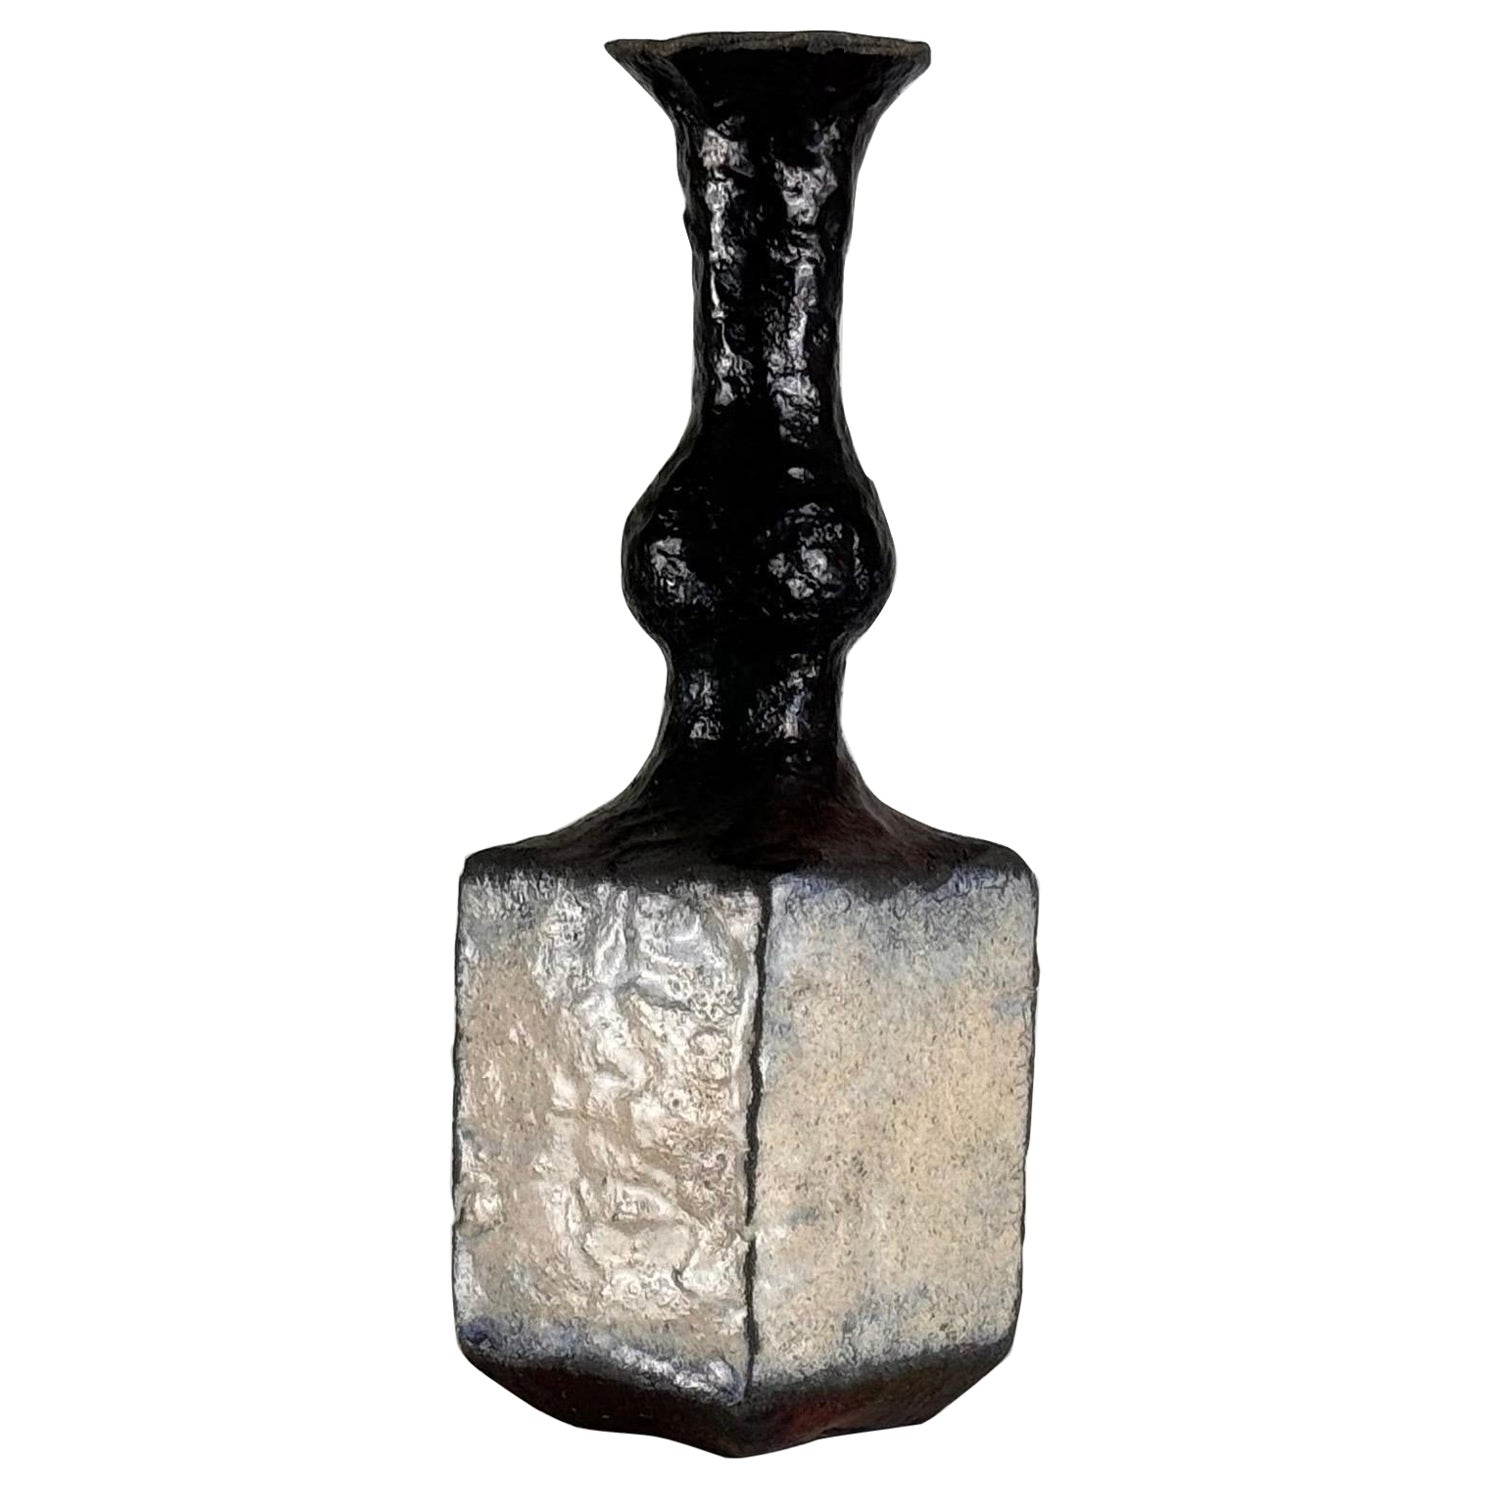 Brutalist Single-Stem Raku Ceramic Vase, 1970s, Italy